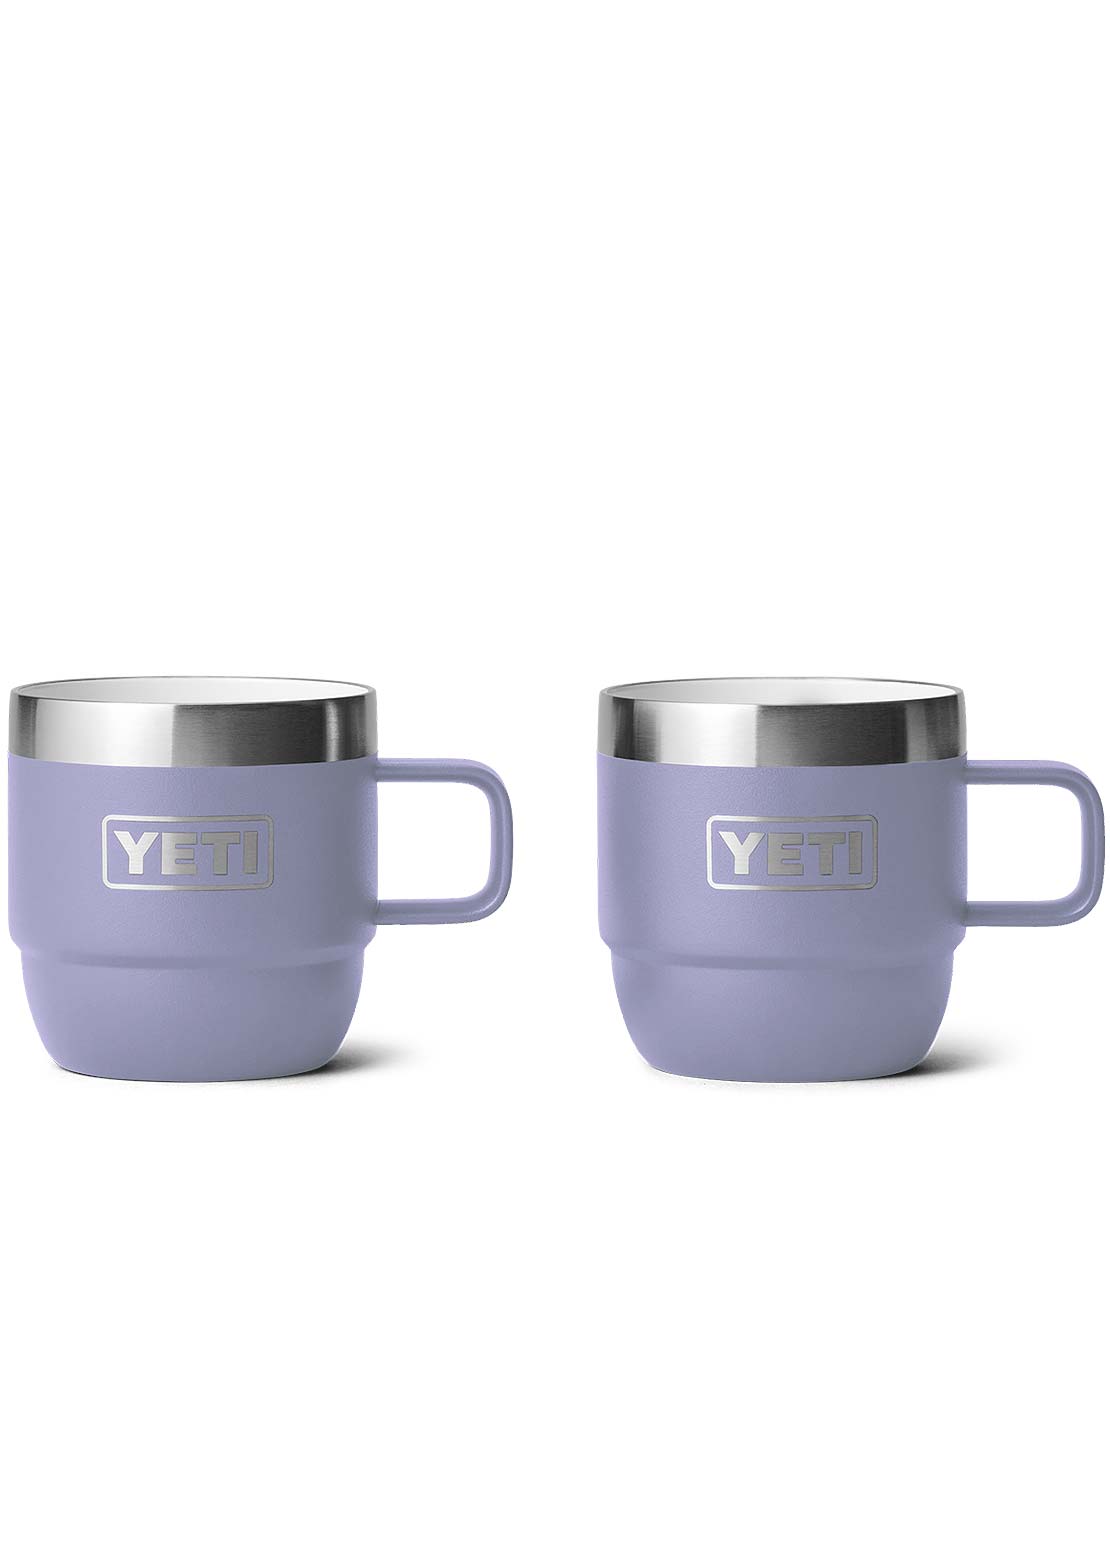 Yeti Rambler 6 Oz Espresso 2Pk Mug Cosmic Lilac